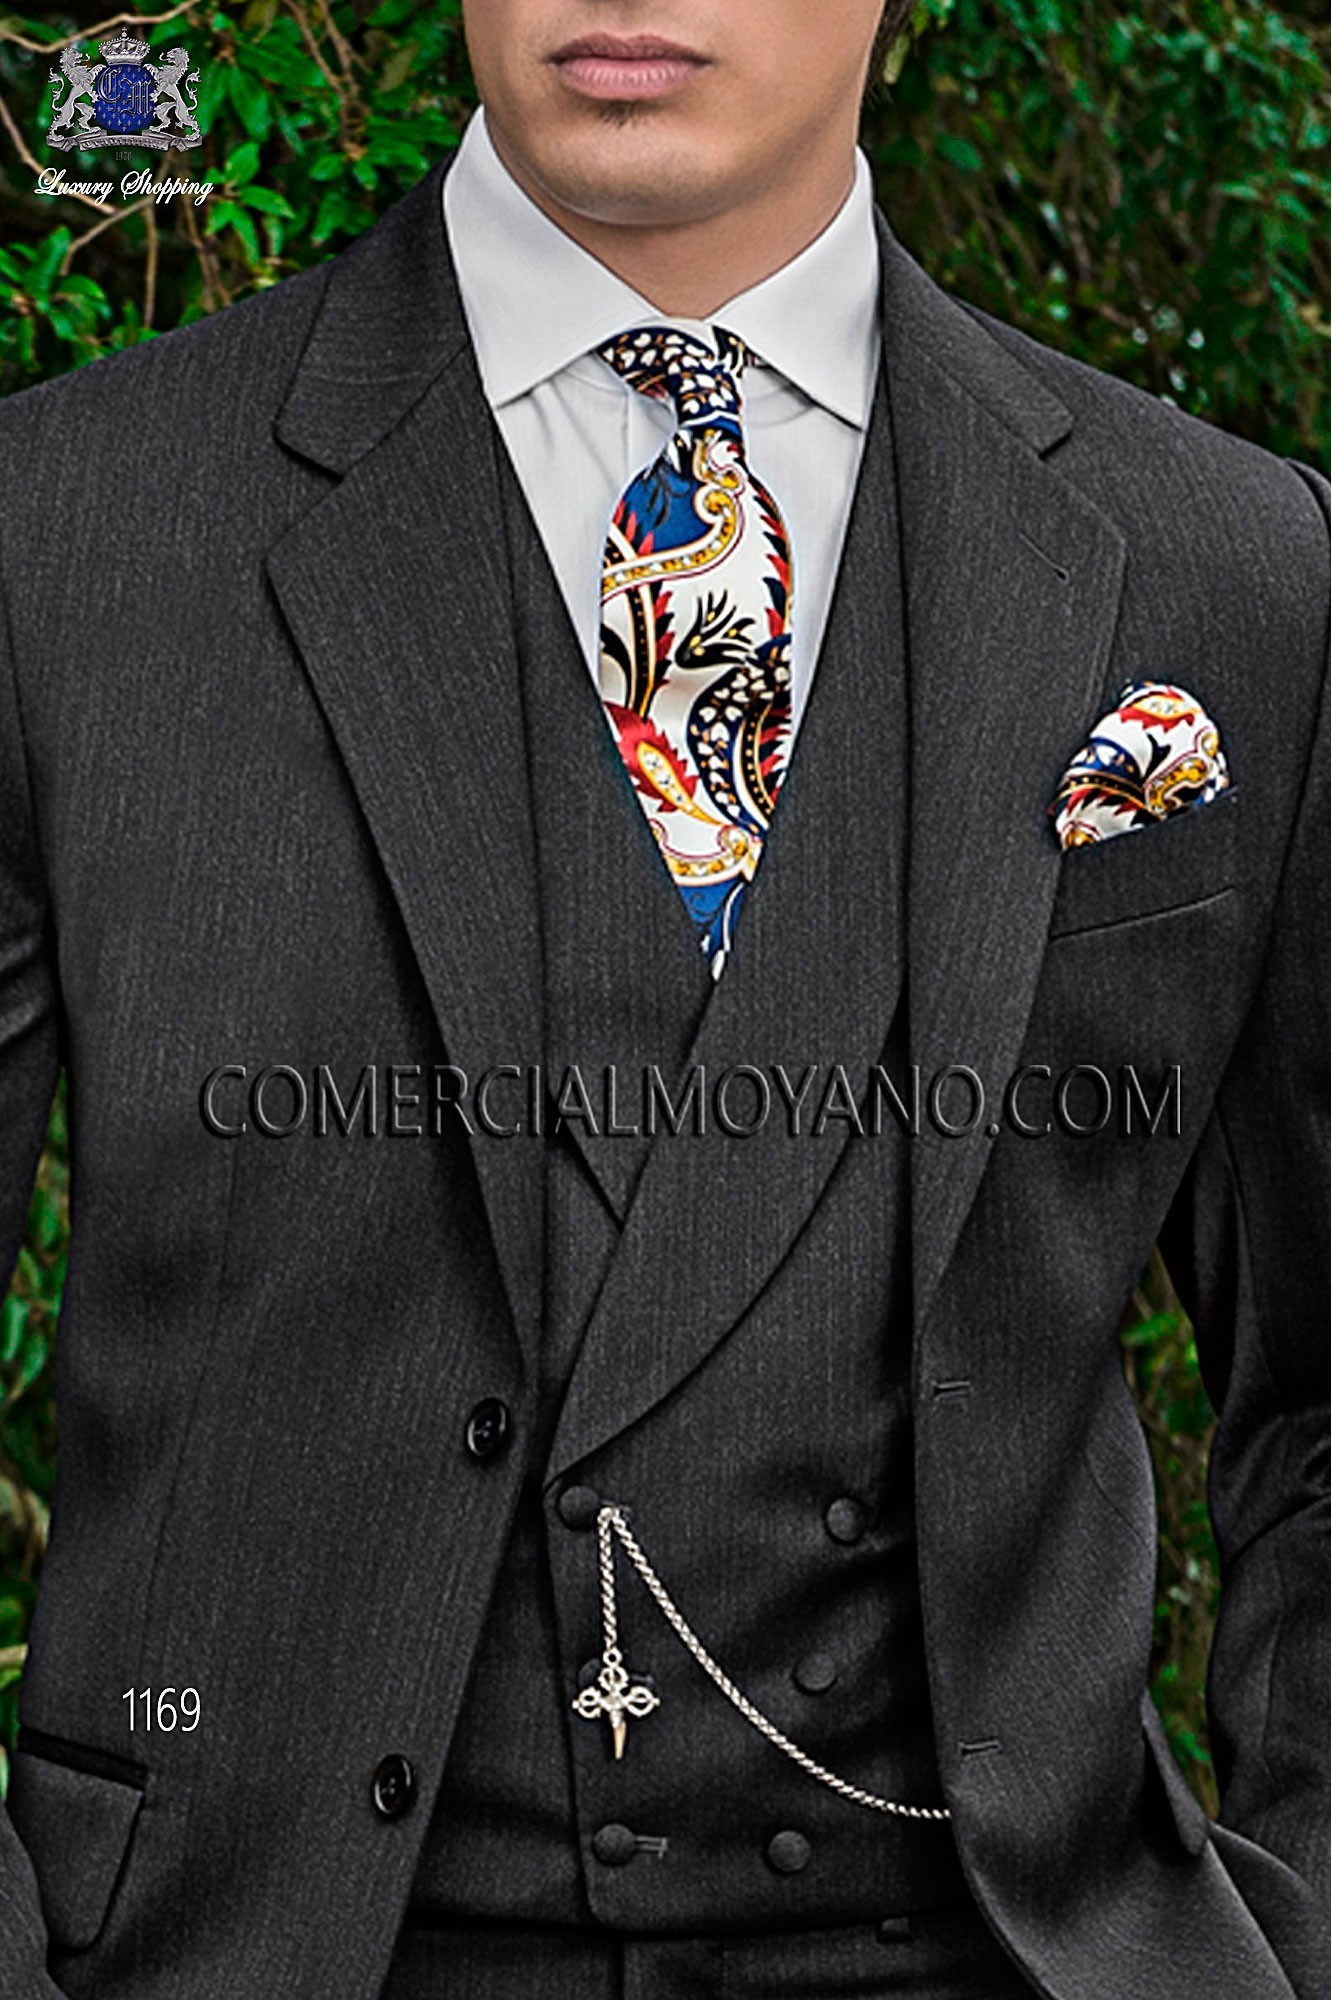 Traje Gentleman de novio gris perla modelo: 1169 Mario Moyano colección Gentleman